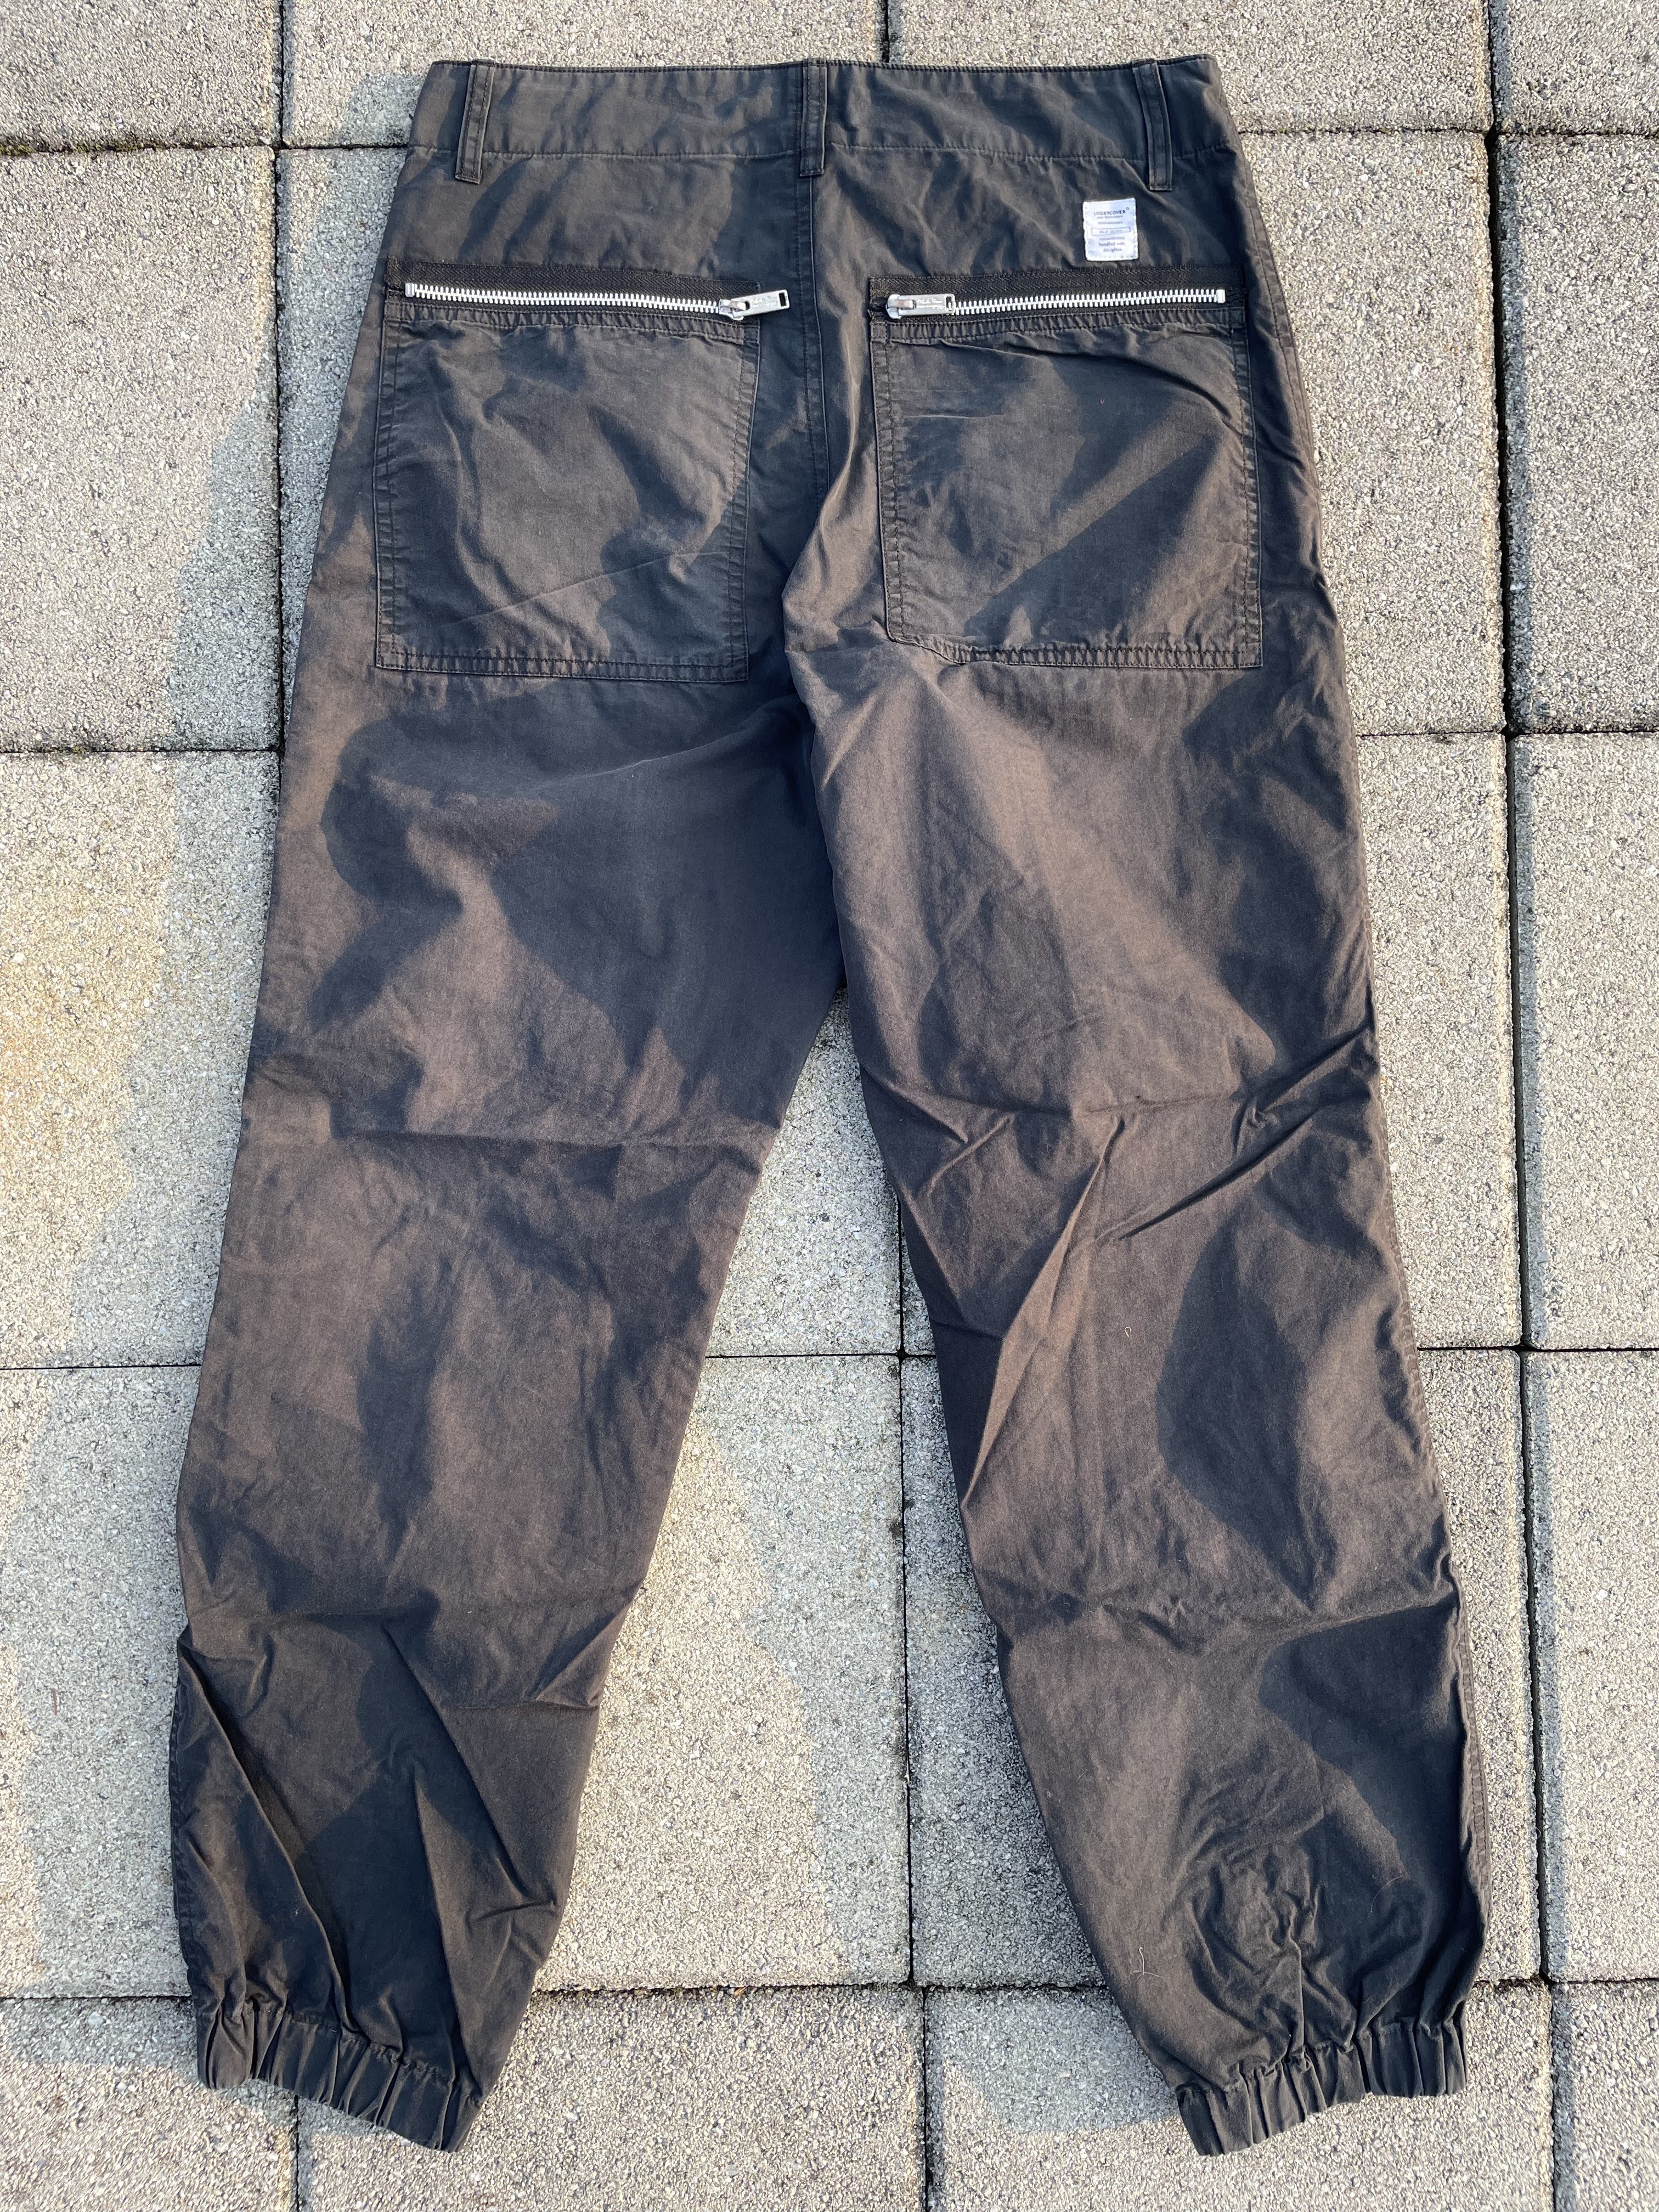 Undercover Zip Tech Cargo pants 2017 jun takahashi